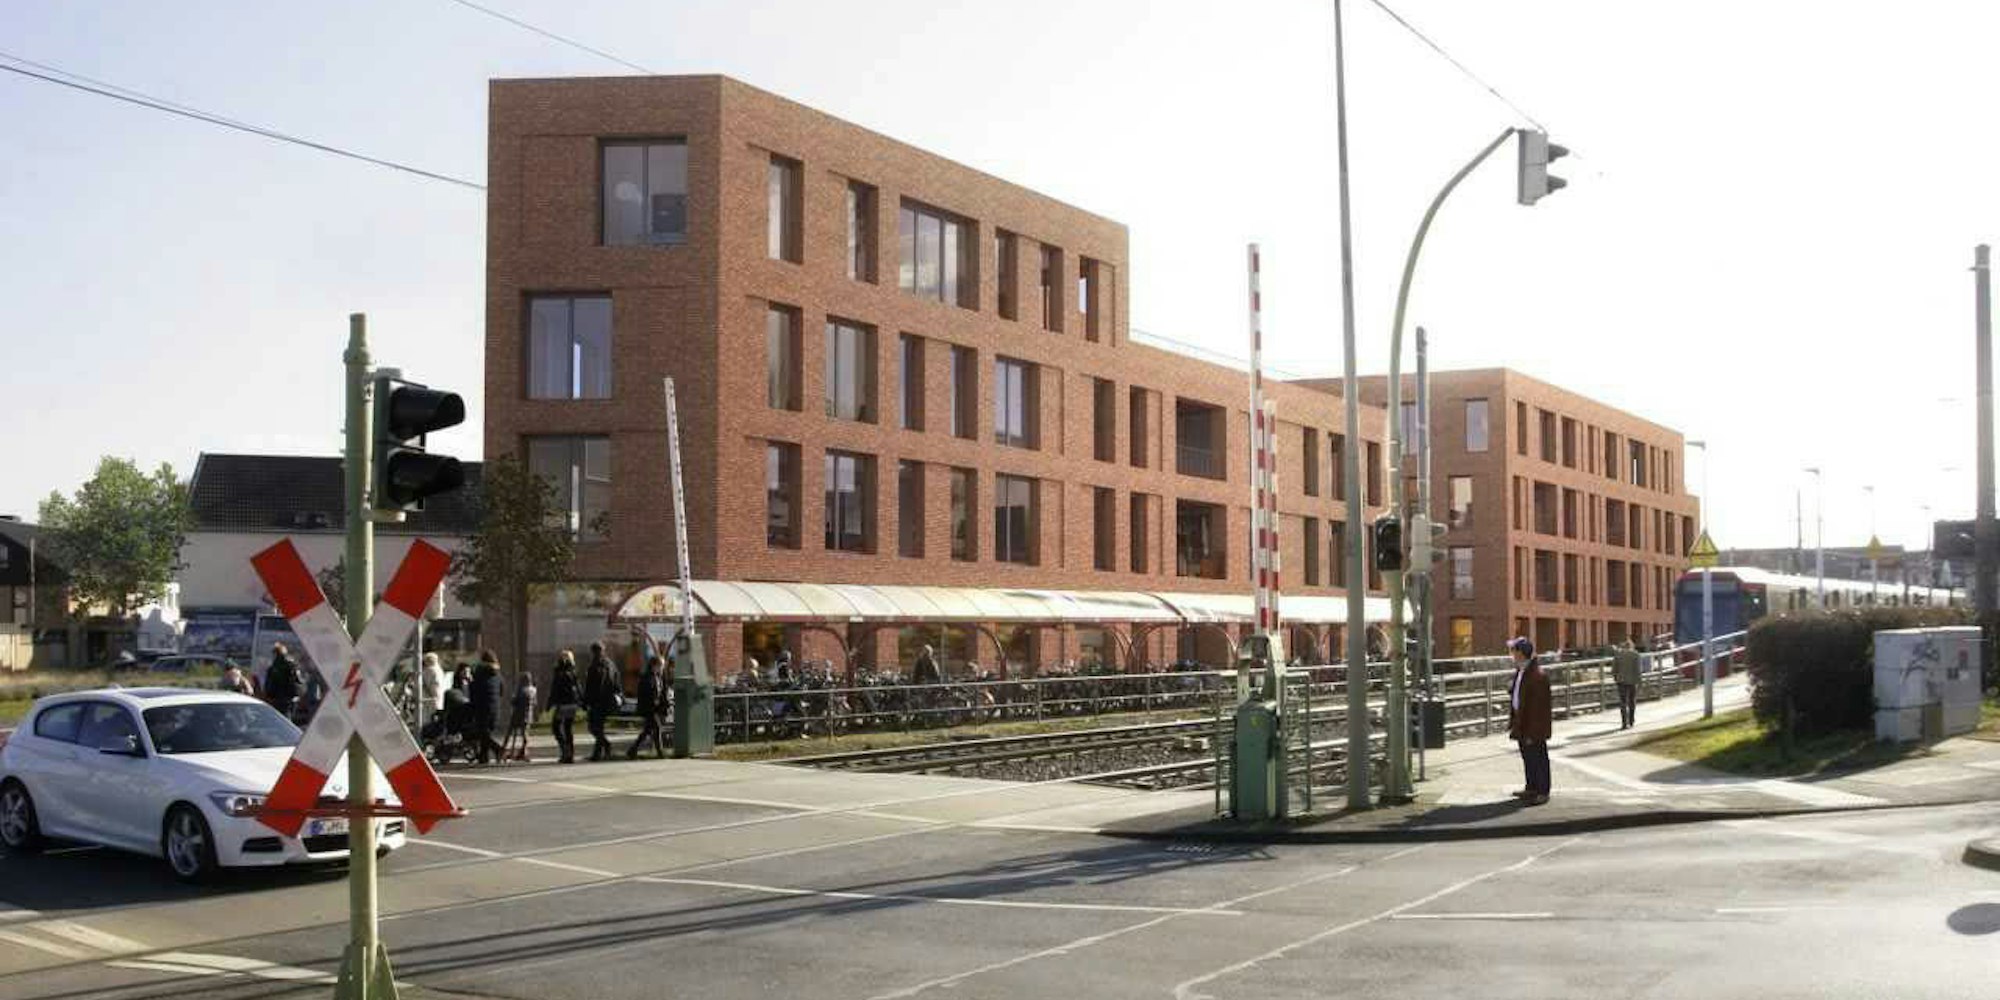 Noch wird wild geparkt am Sürther Bahnhof, doch damit ist bald Schluss. Das neue Bahnhofsgebäude (Bild rechts) soll so aussehen.